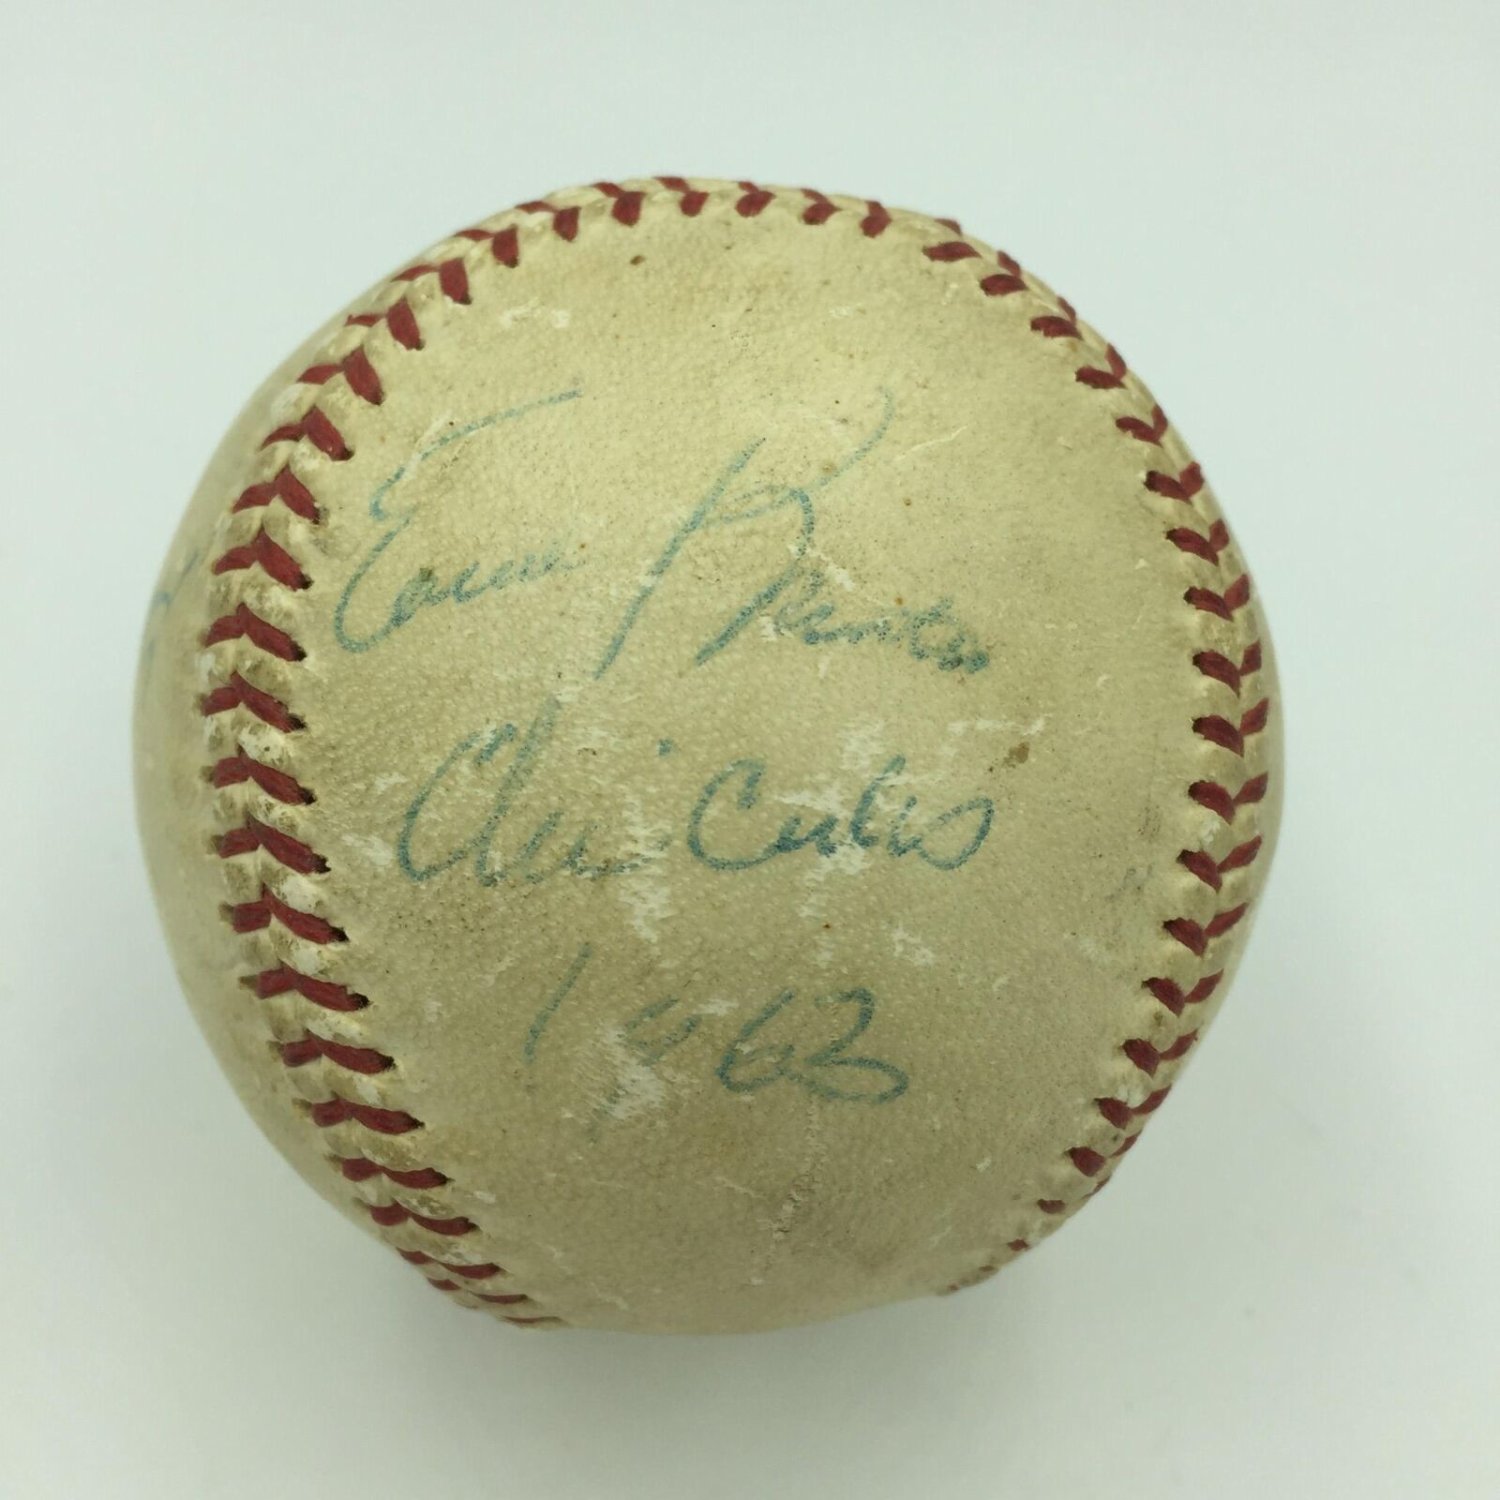 Ernie Banks MLB Fan Jerseys for sale